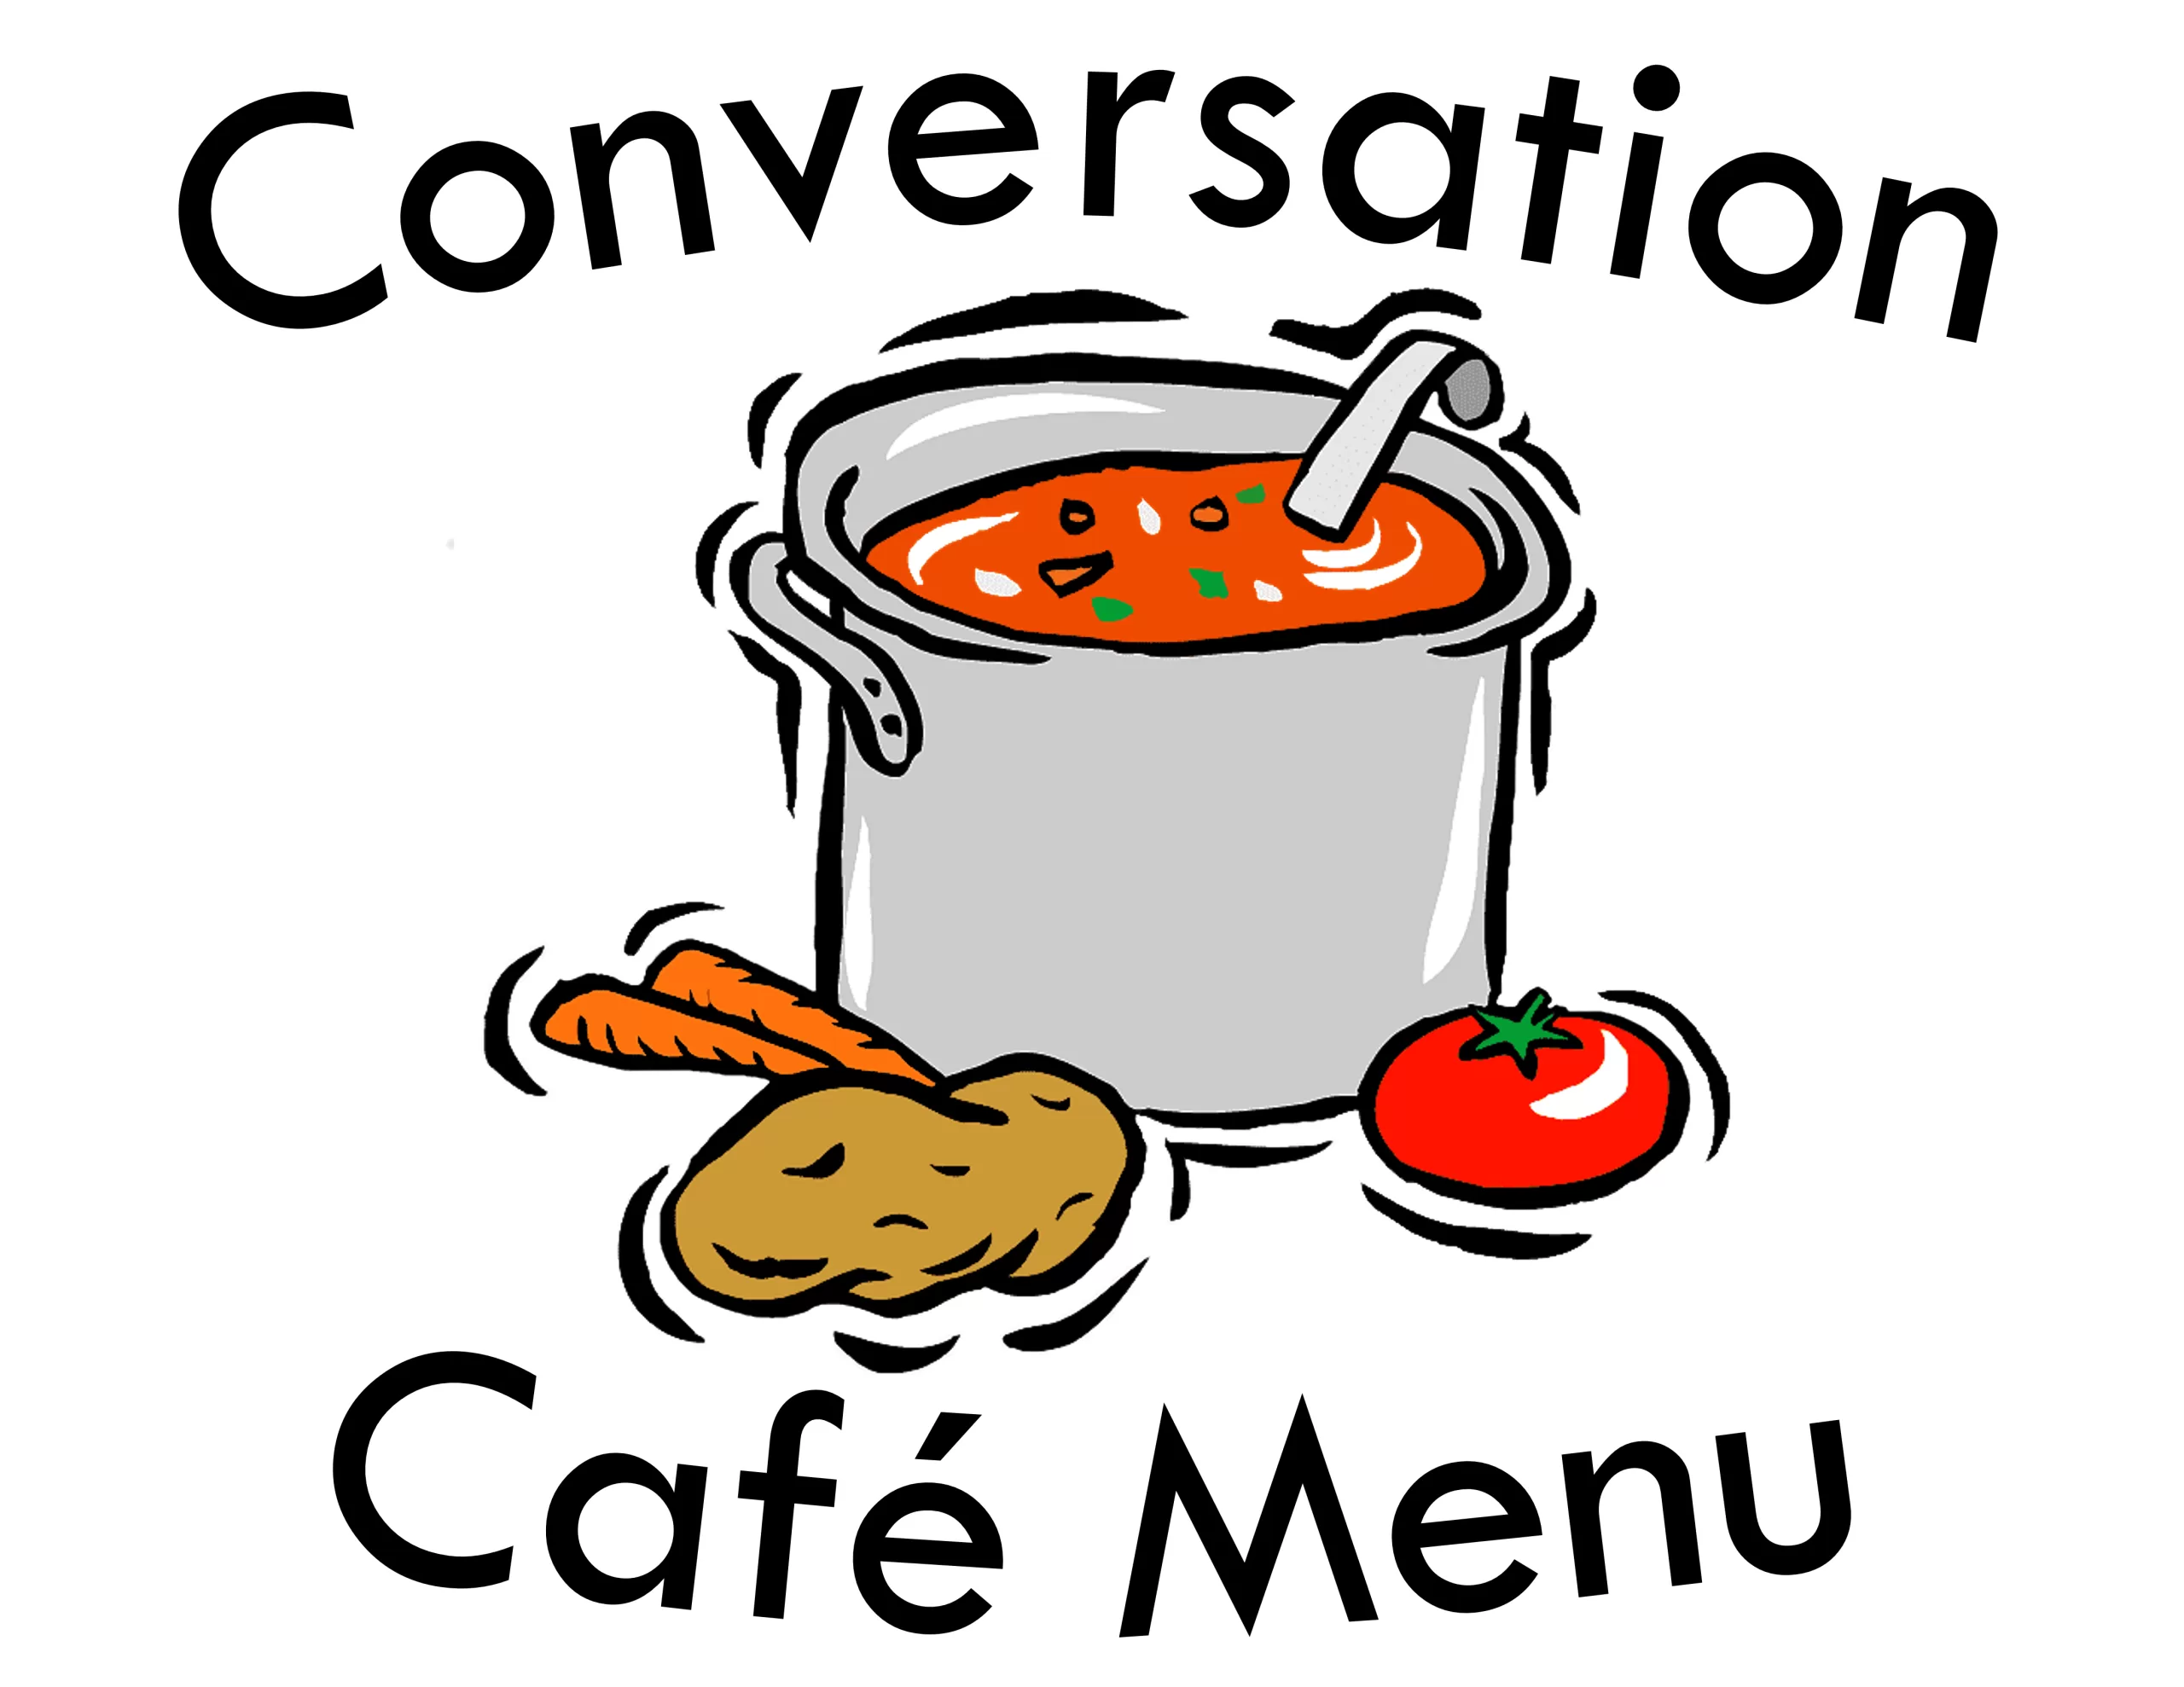 Conversation Cafe Menu graphic showing a soup pot with vegetables